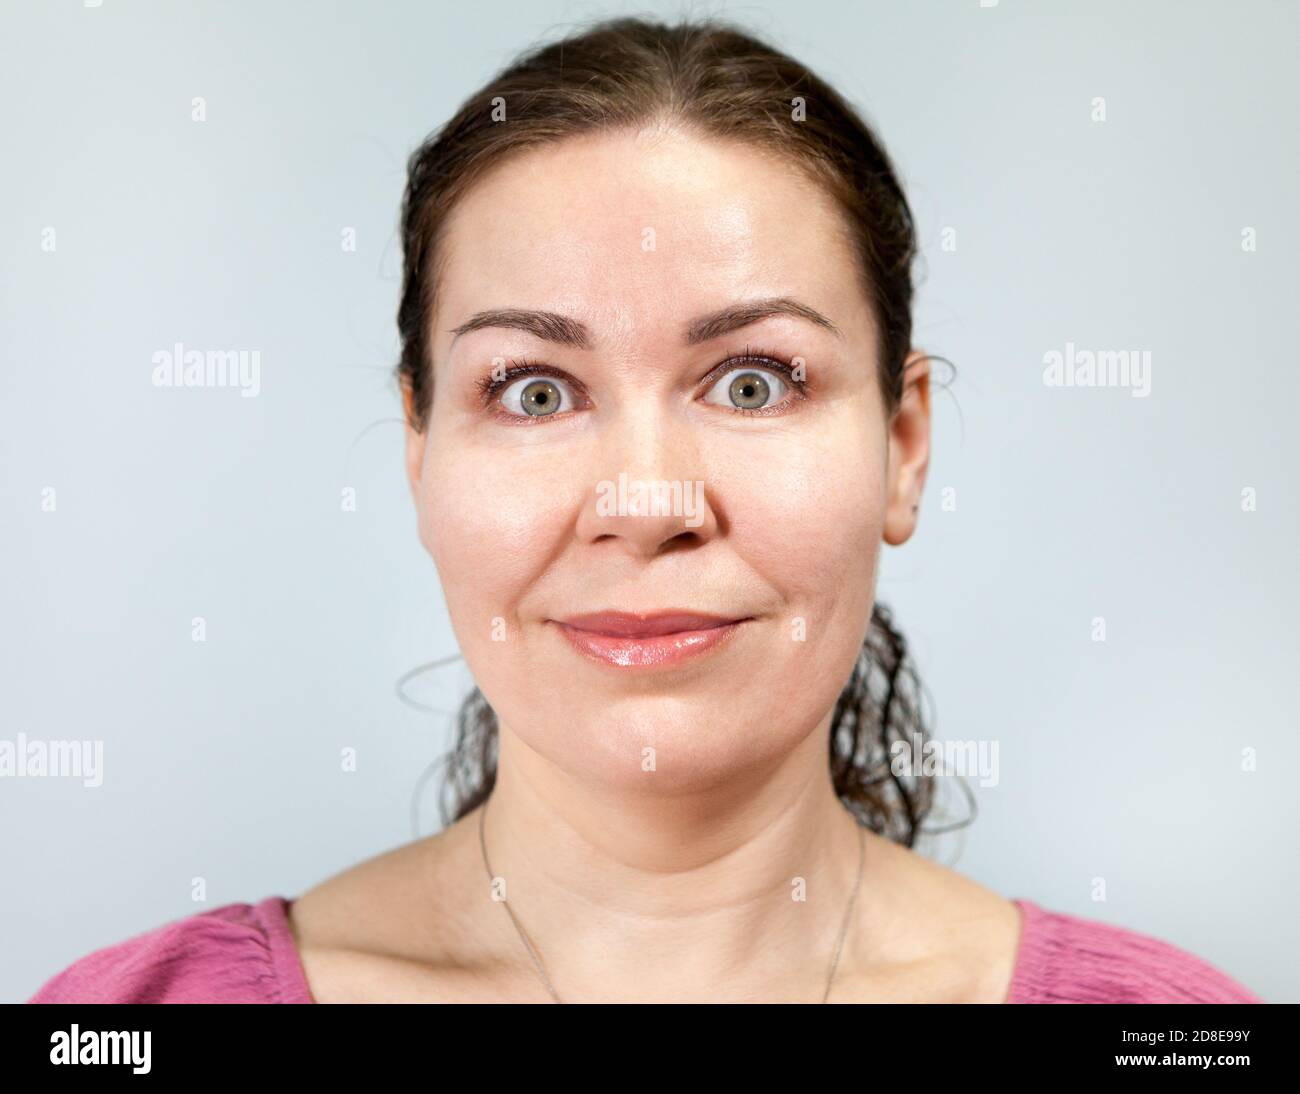 Erwachsene Frau mit einem Lächeln und weit geöffneten Augen, Porträt auf grauem Hintergrund, Emotionen-Serie Stockfoto